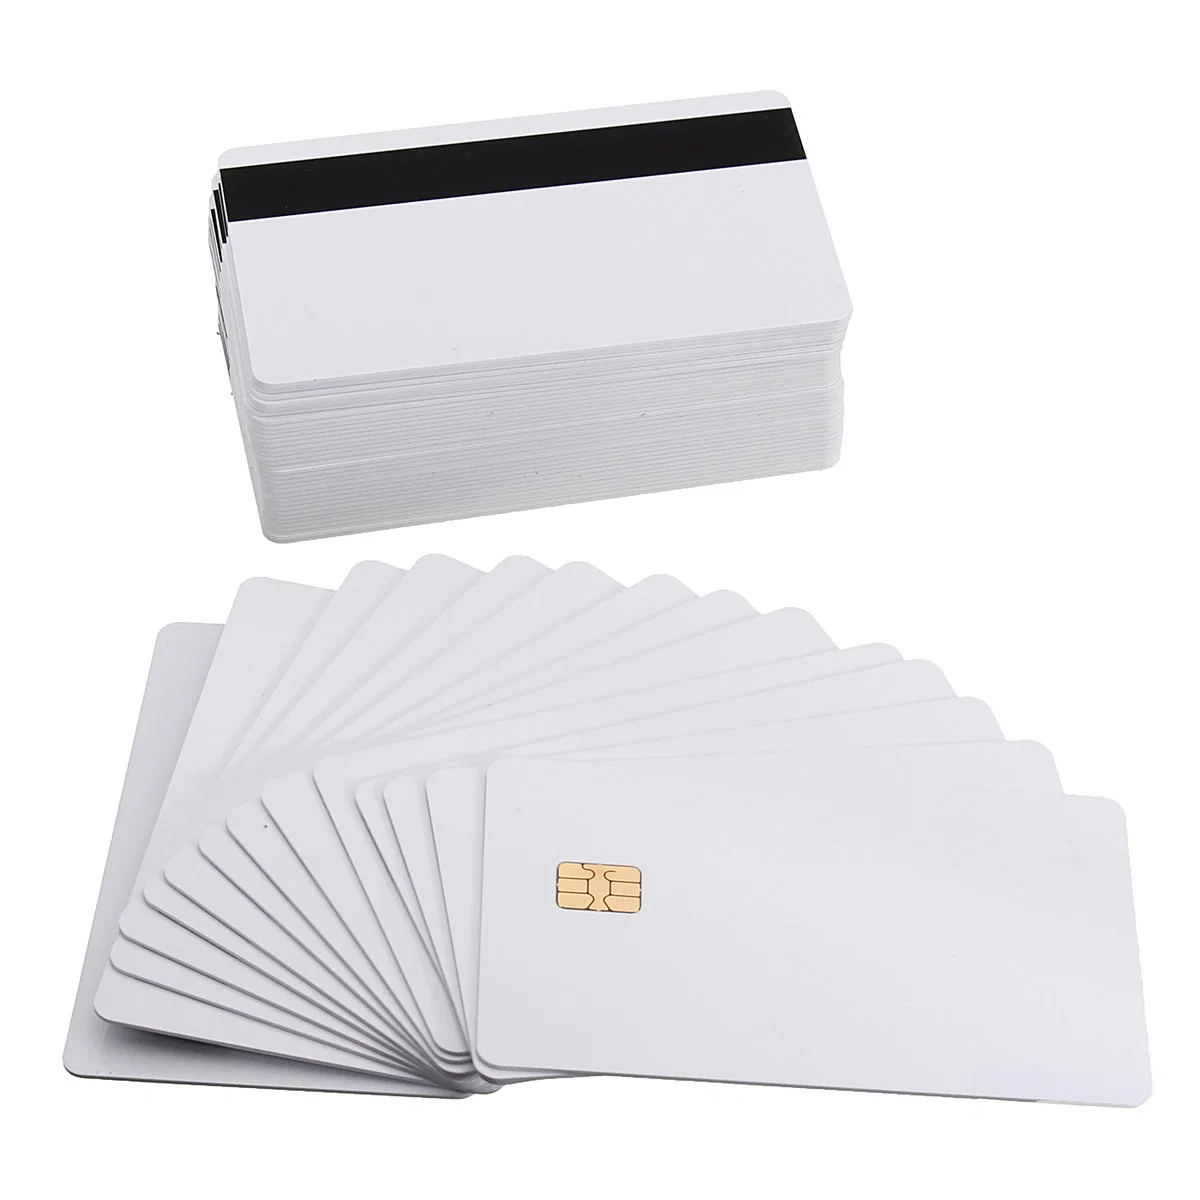 Tamaño de tarjeta de crédito de PVC Blank Magnetic Stripe para imprimir Tarjetas para el banco